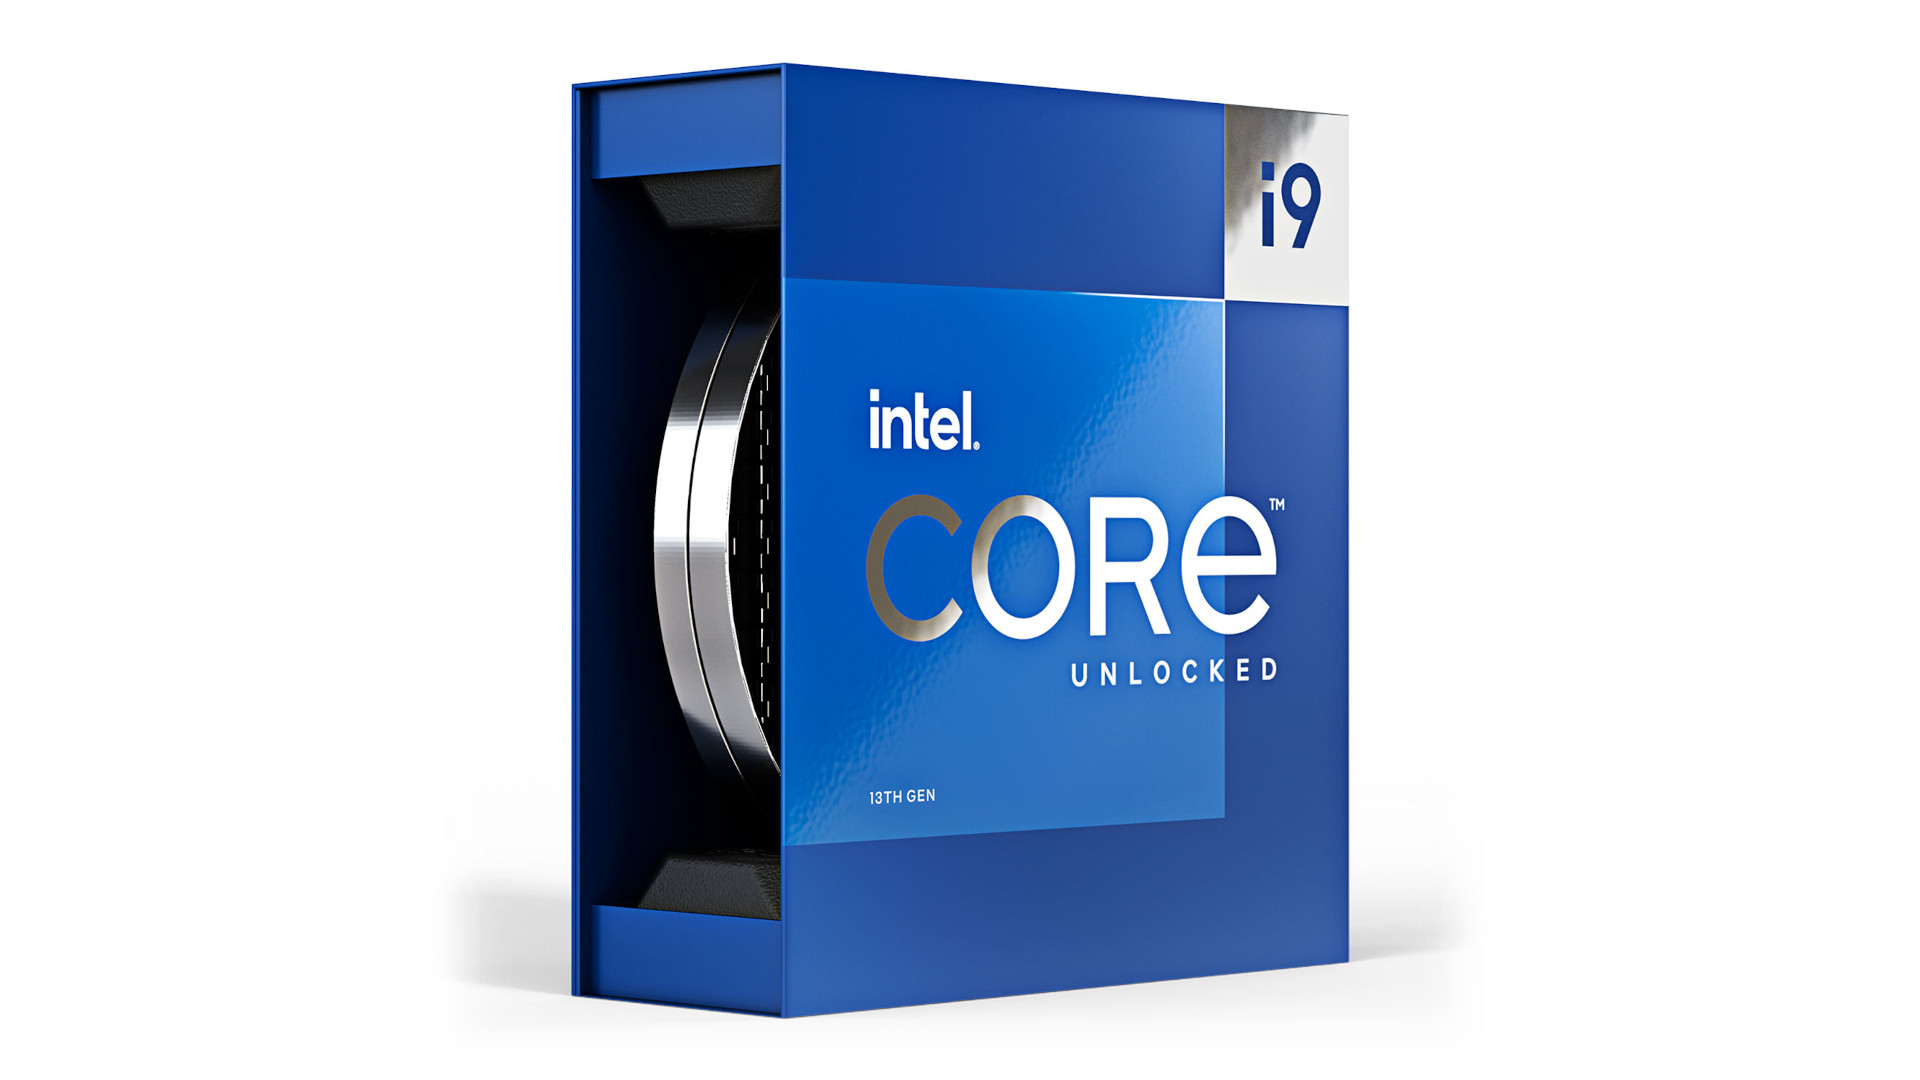 Die leistungsstärkste Intel -Gaming -CPU ist der Intel Core i9 13900k